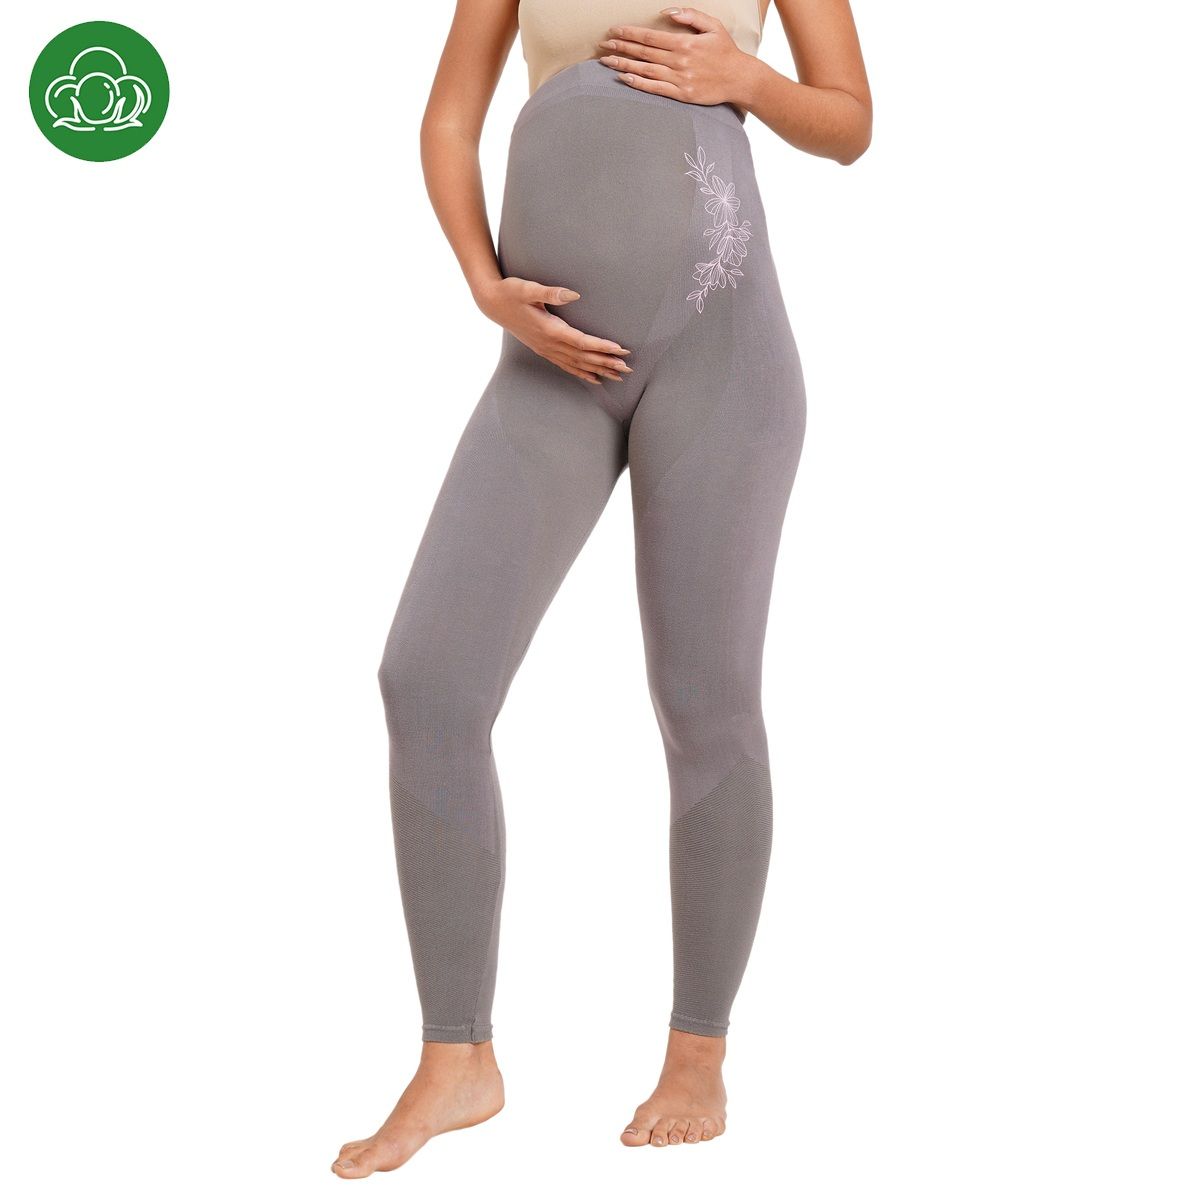 Buy Maternity Leggings for Pregnancy from BlissClub